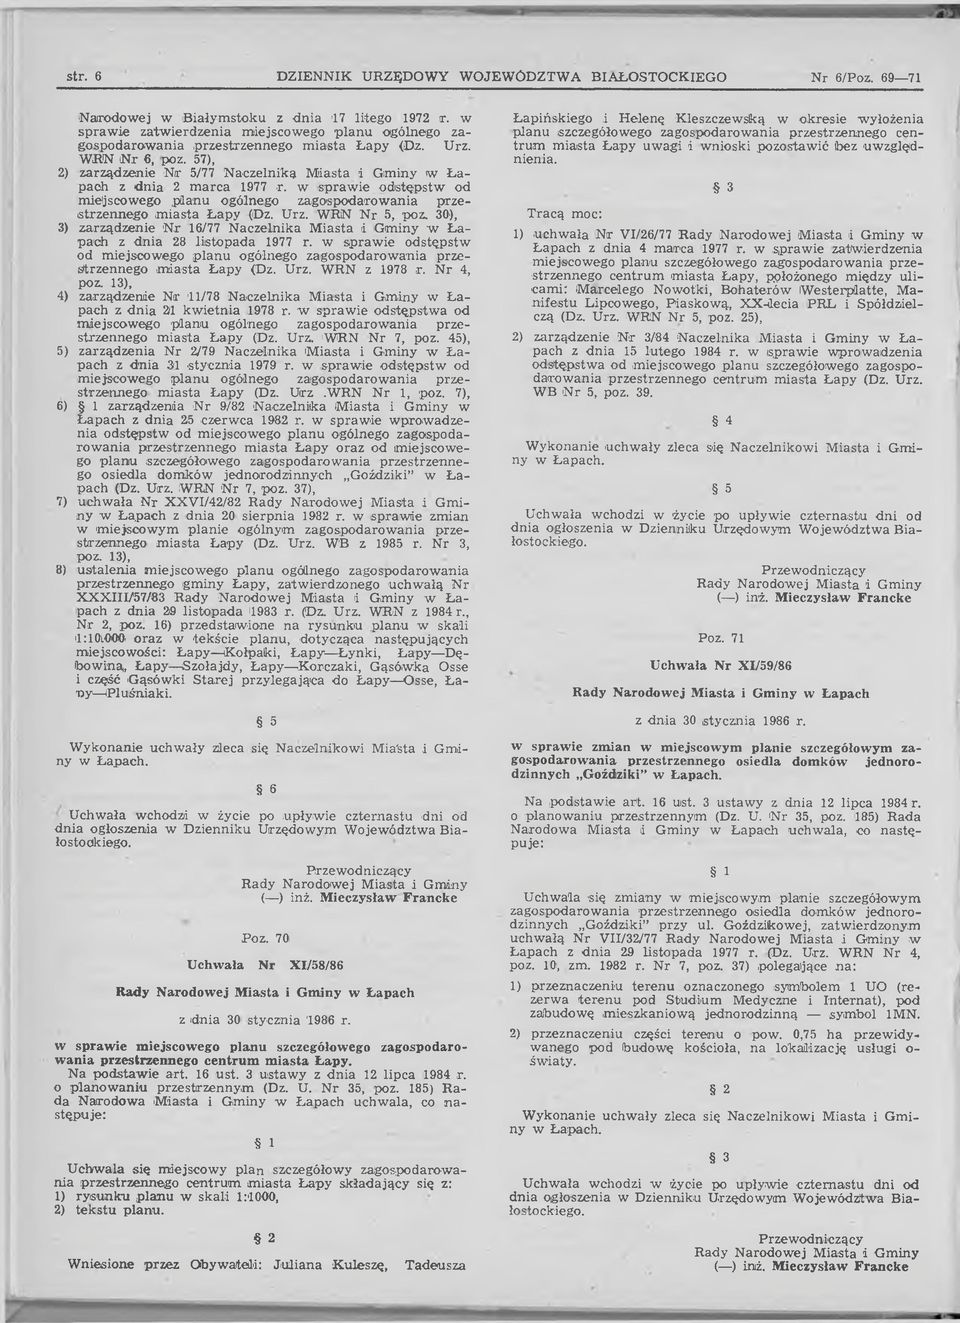 57), 2) zarządzenie N r 5/77 Naczelnika Miasta i Gminy w Ł a pach z dnia 2 marca 1977 r. w sprawie odstępstw od miejscowego planu ogólnego zagospodarowania przestrzennego miasta Łapy (Dz. Urz.